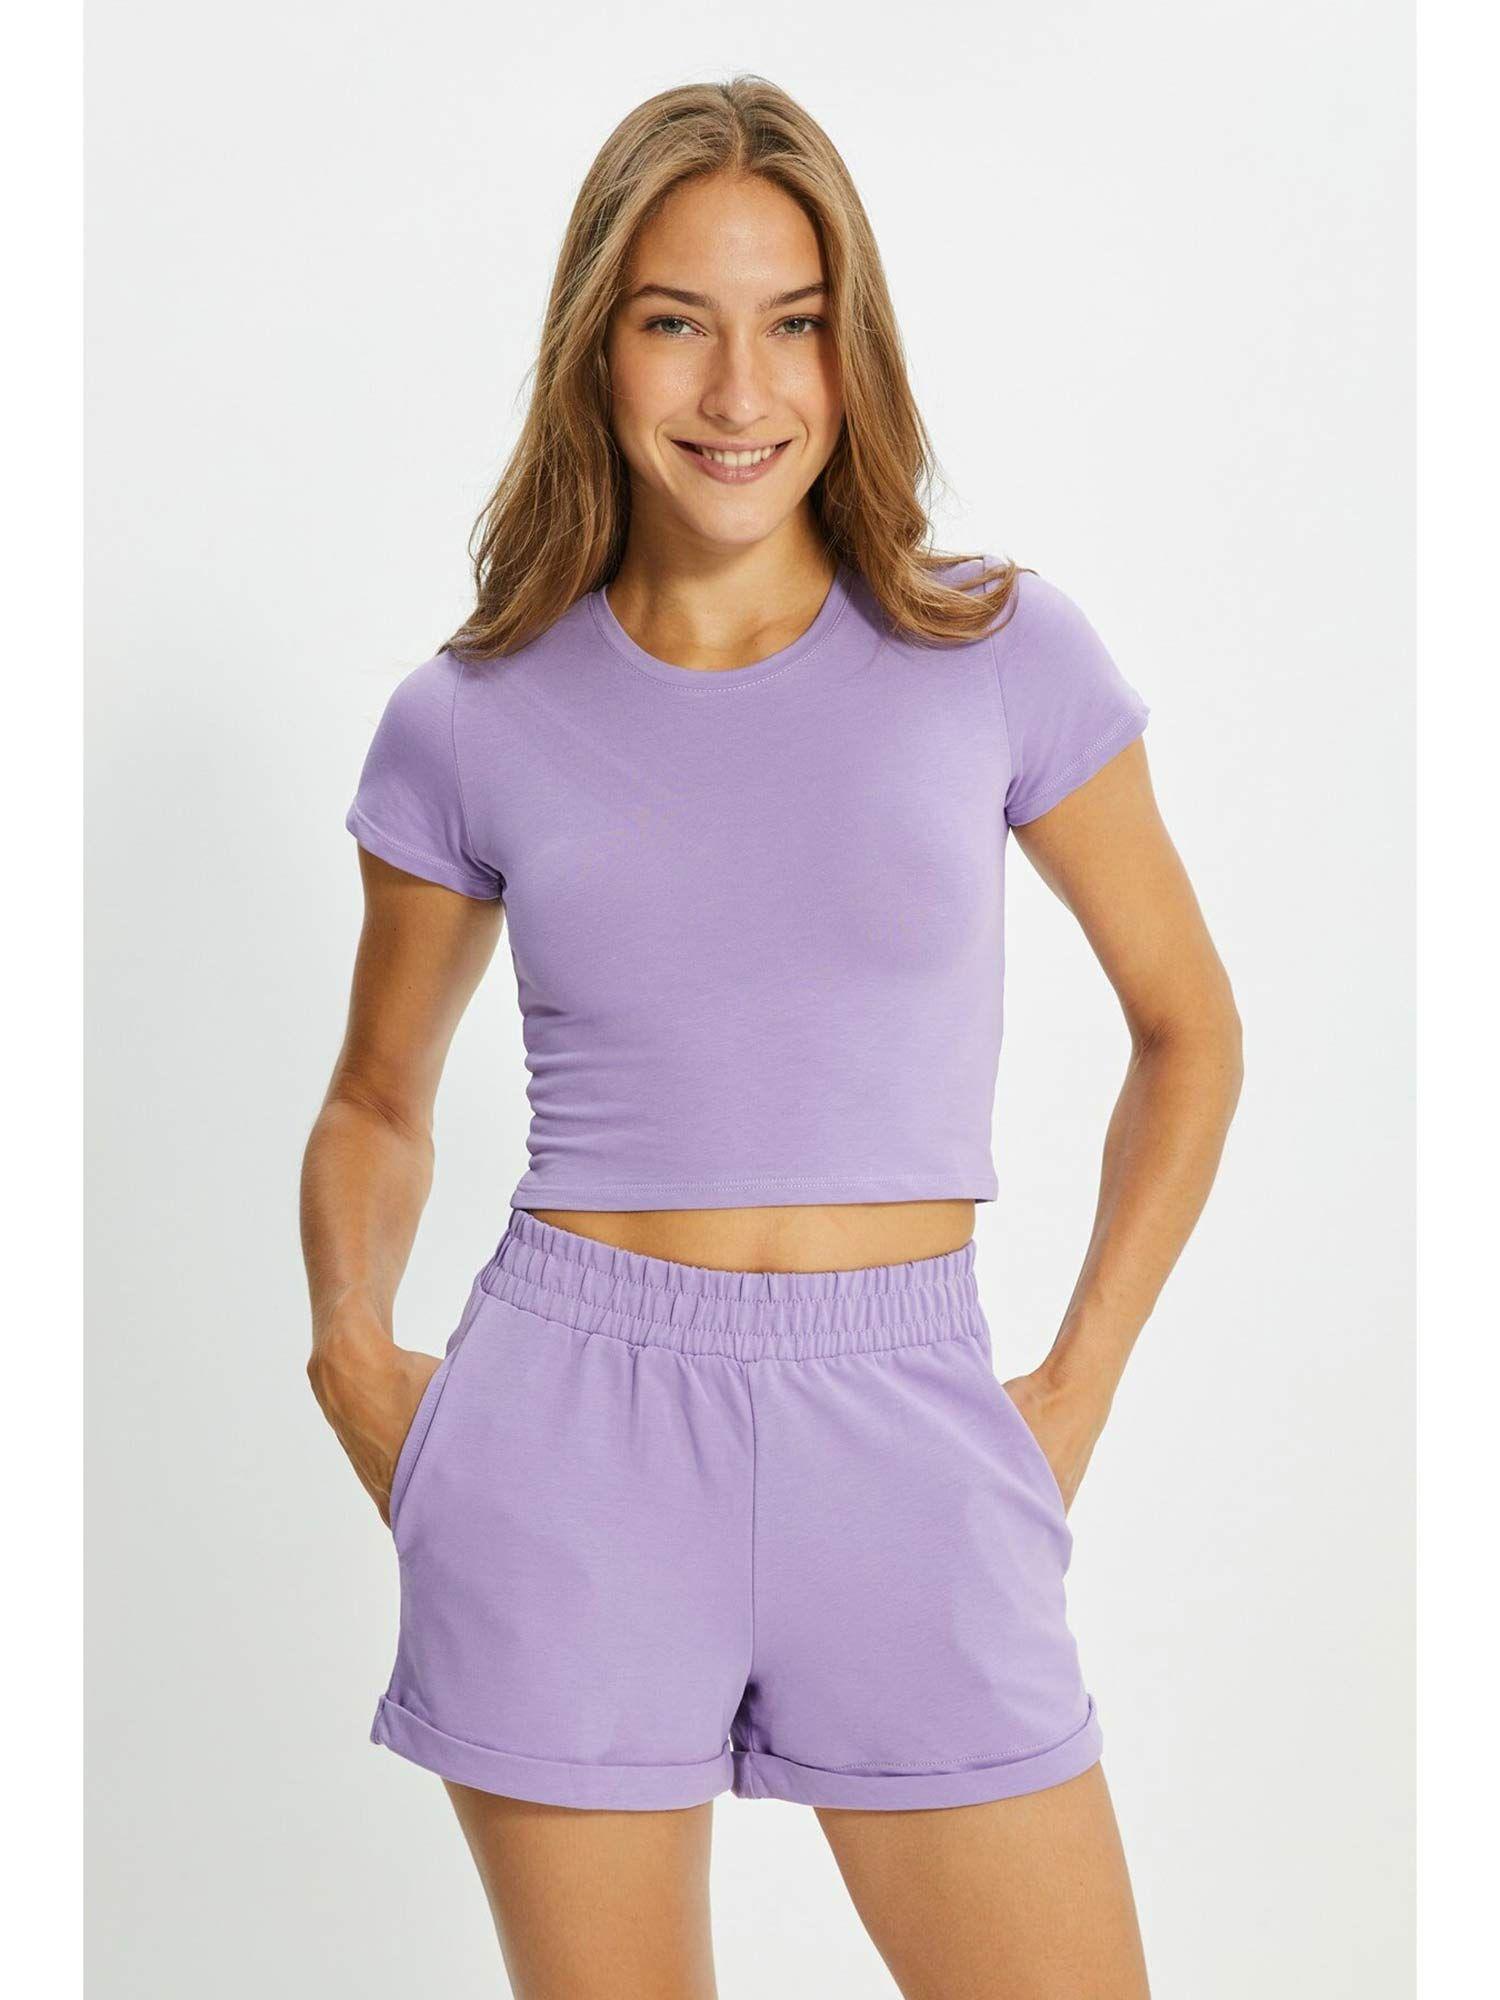 women's purple solid/plain pattern sets